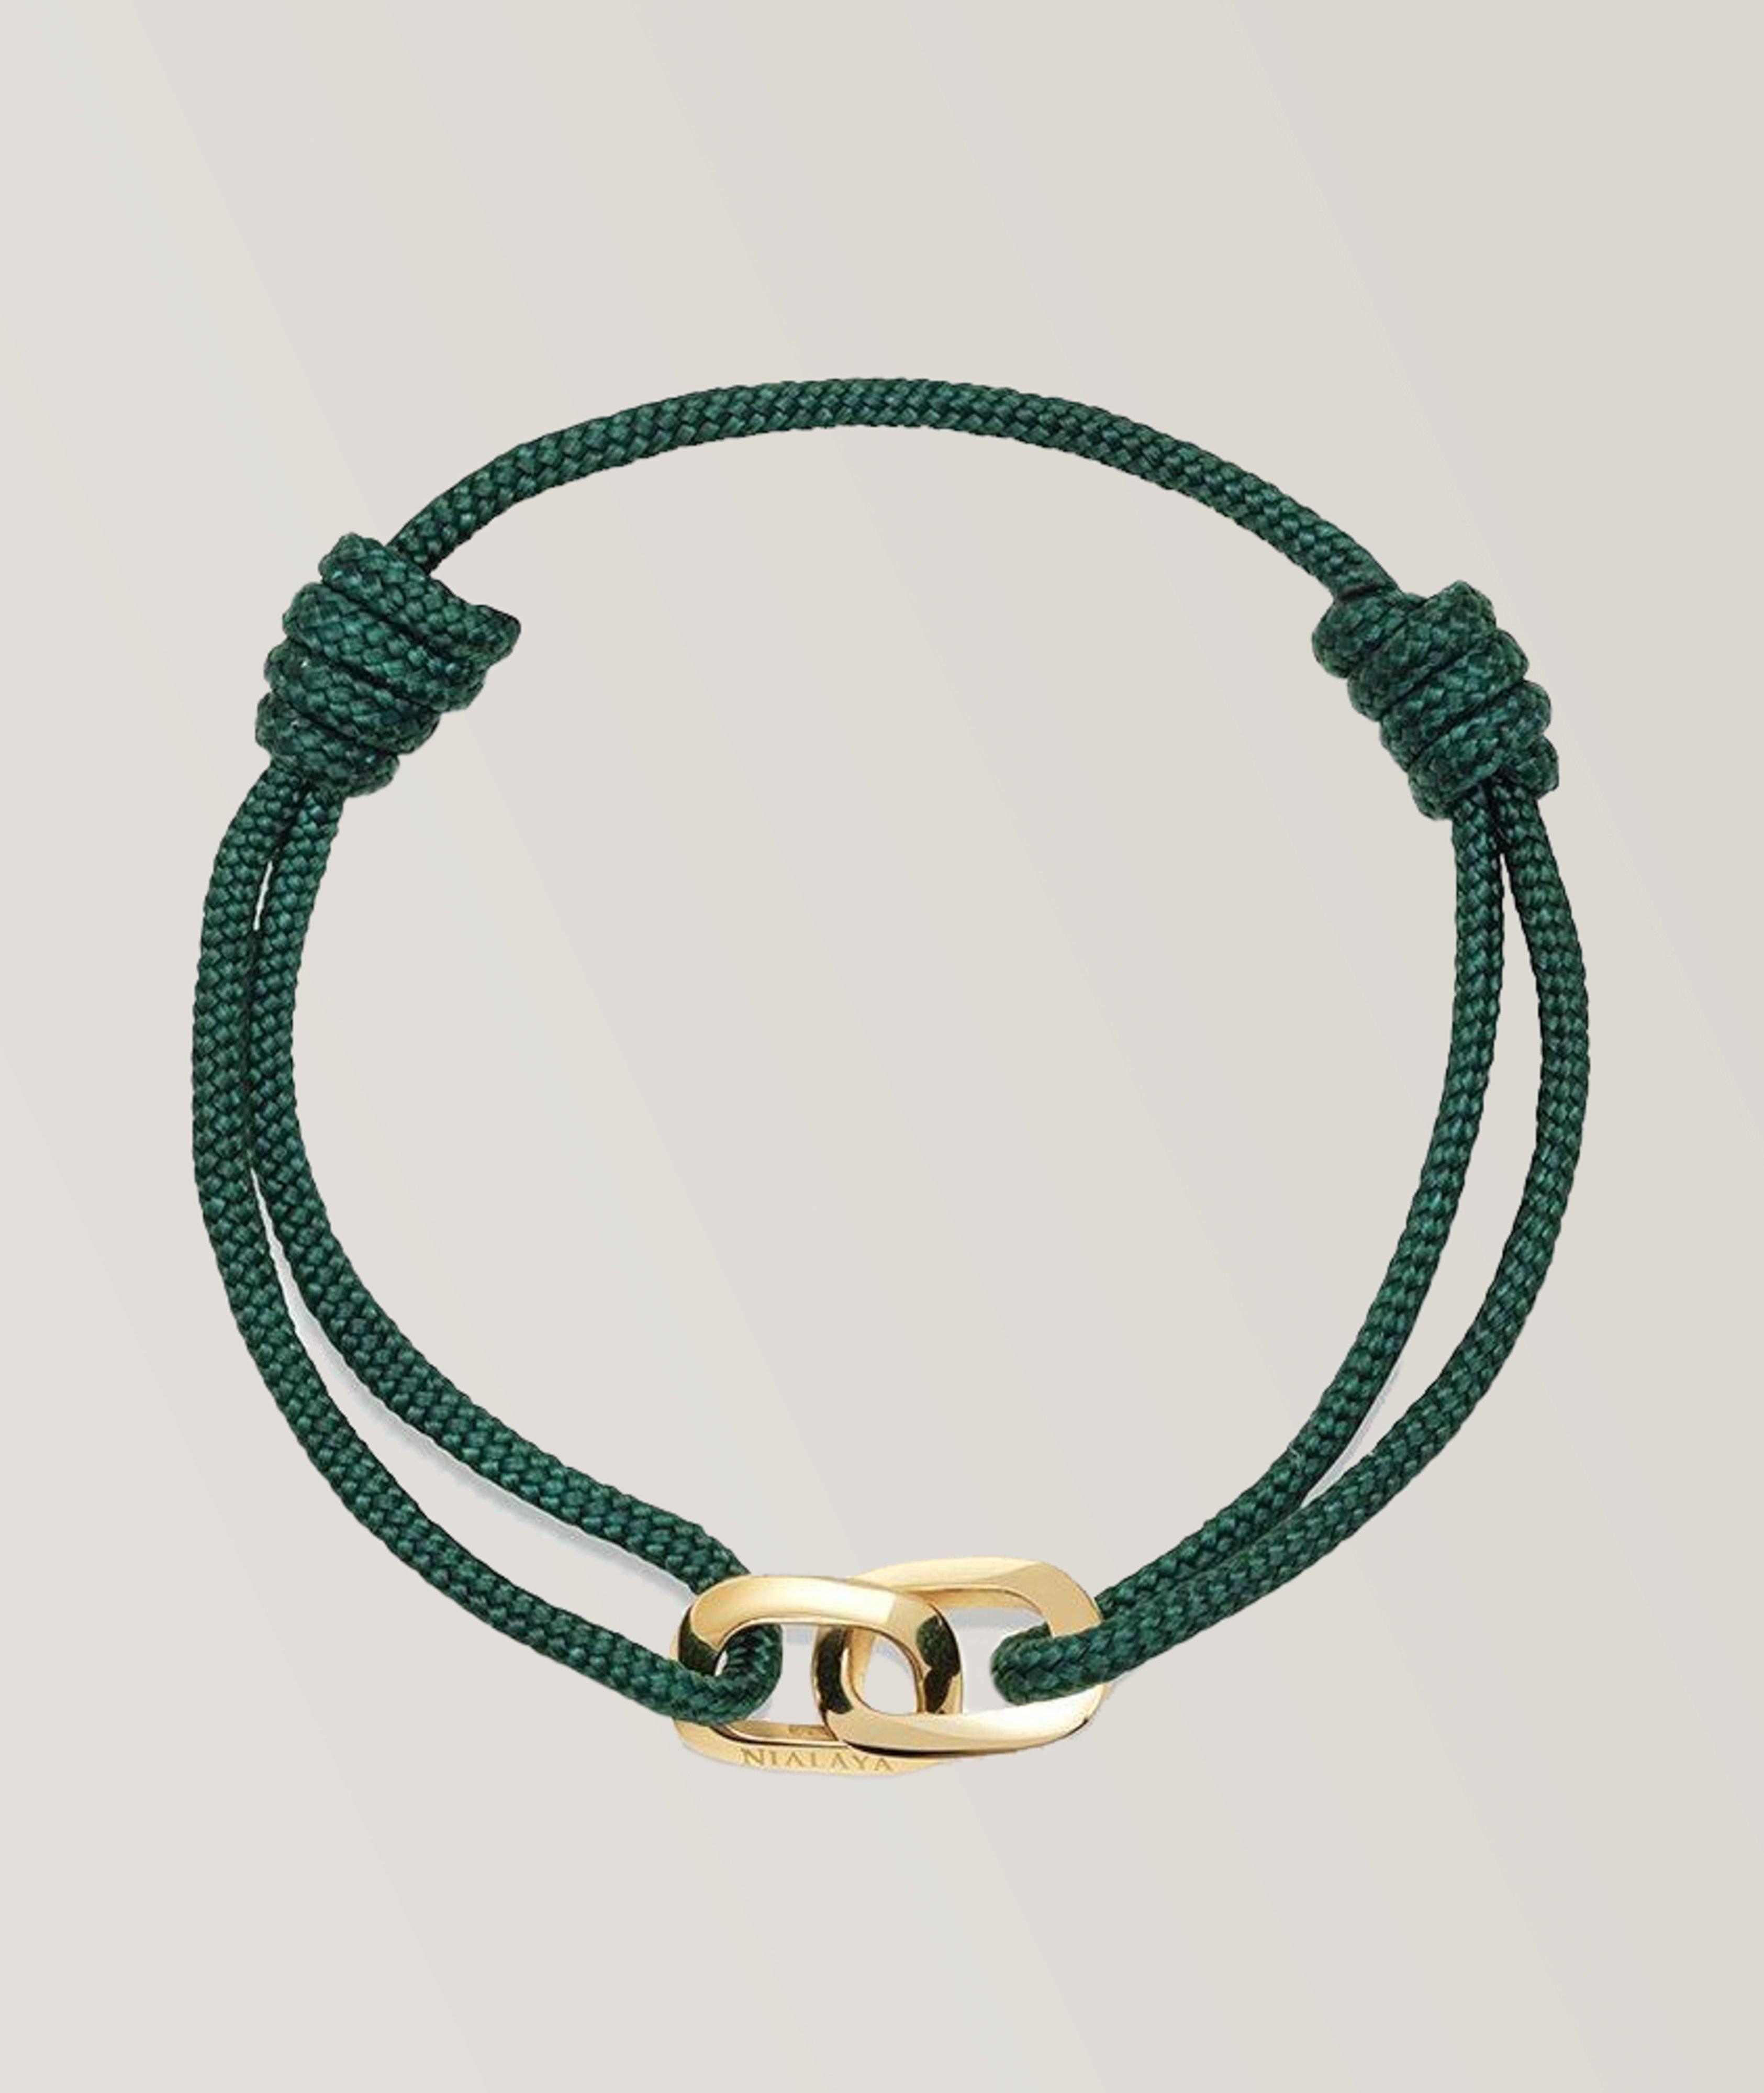 Nialaya Dark Green String Bracelet With Gold Interlocking Rings image 0